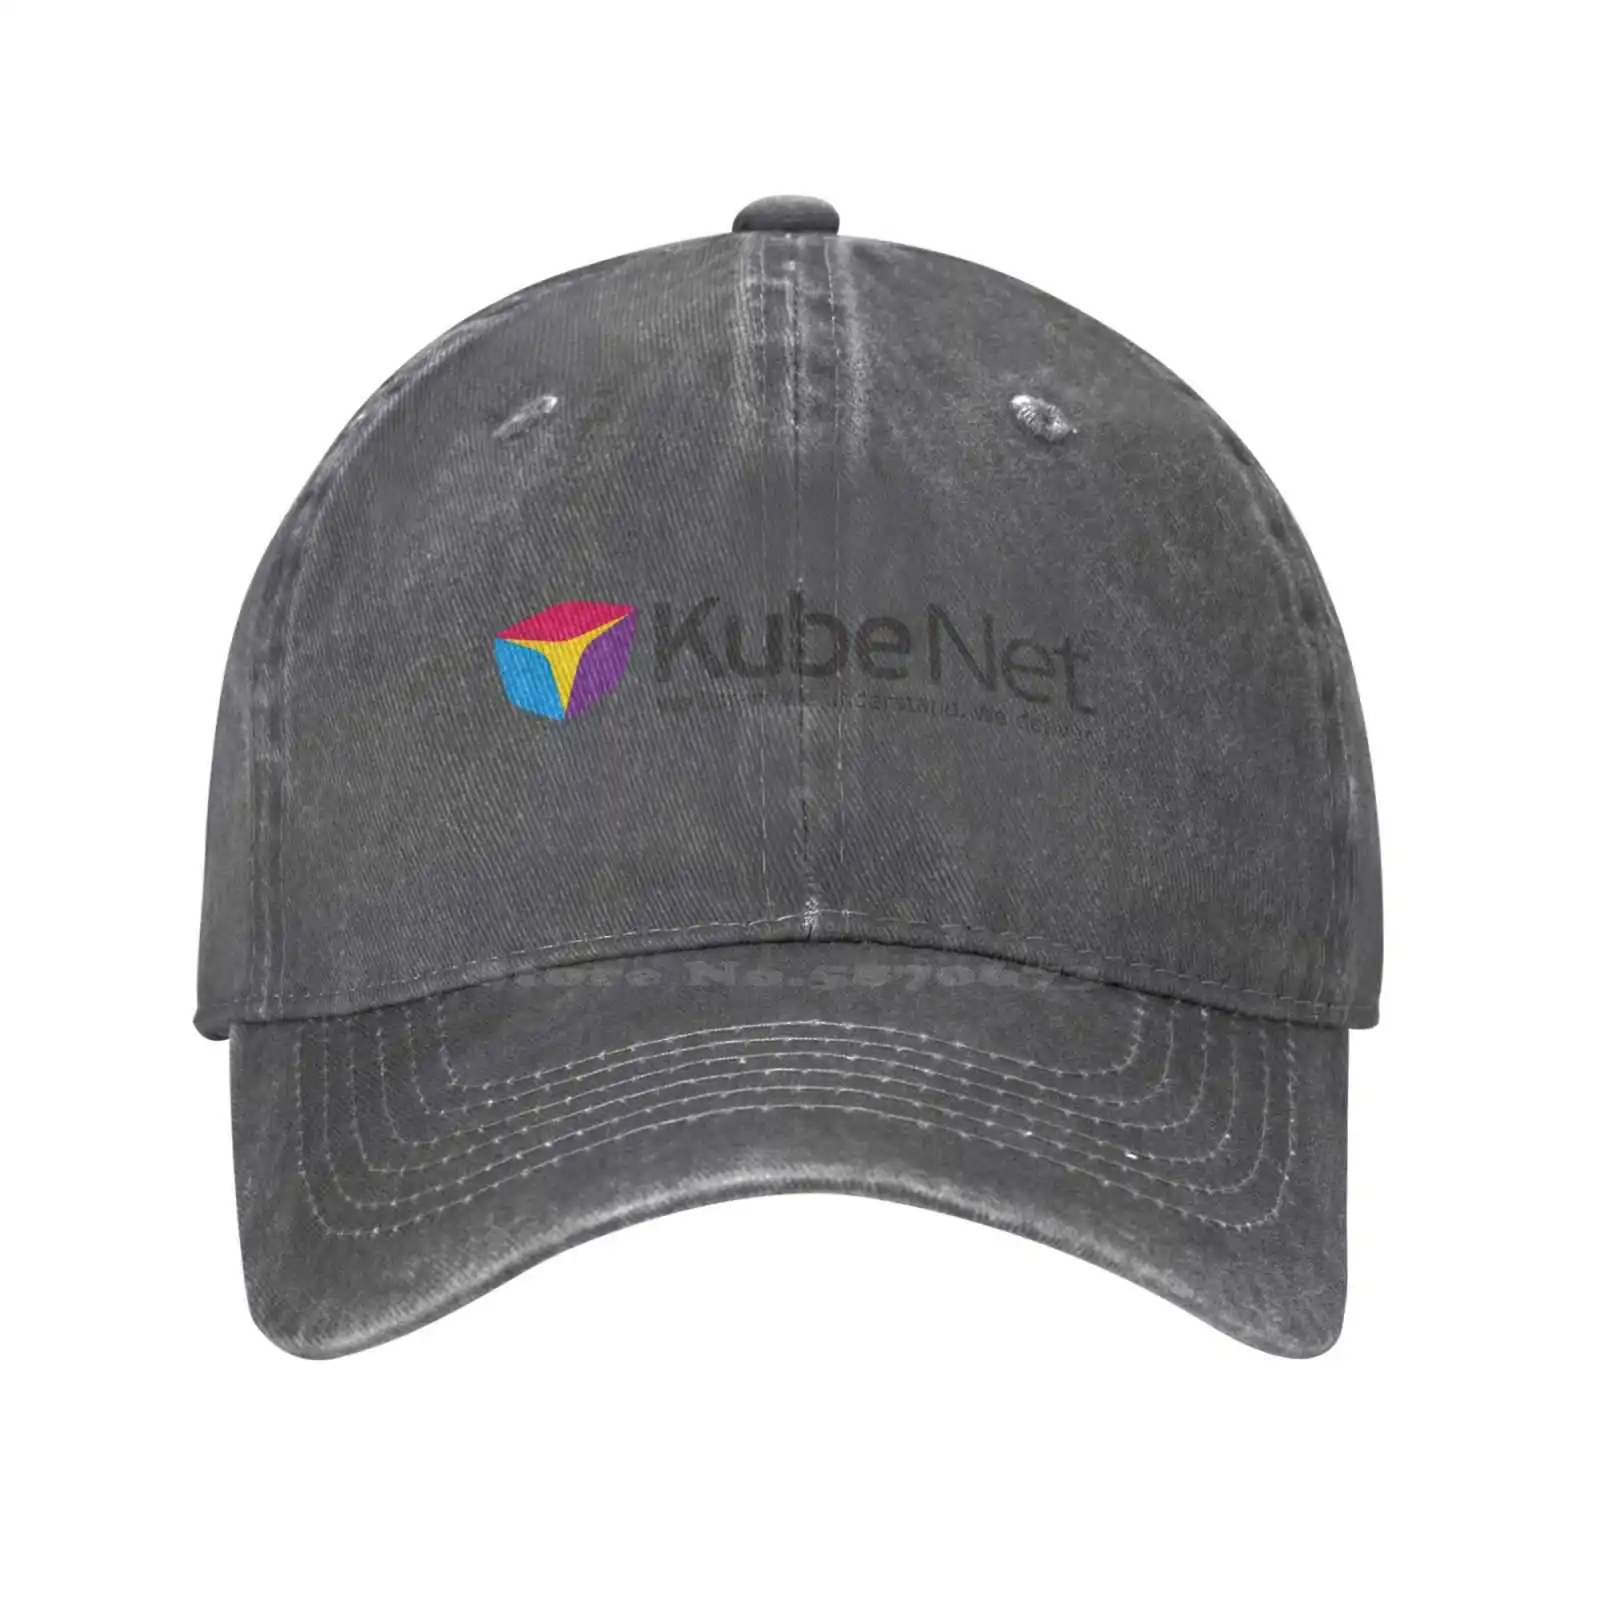 Görüntü /379326-Kubenet-logo-baskı-grafik-rahat-kot-kap-örme-şapka_cdn/share-1.jpeg